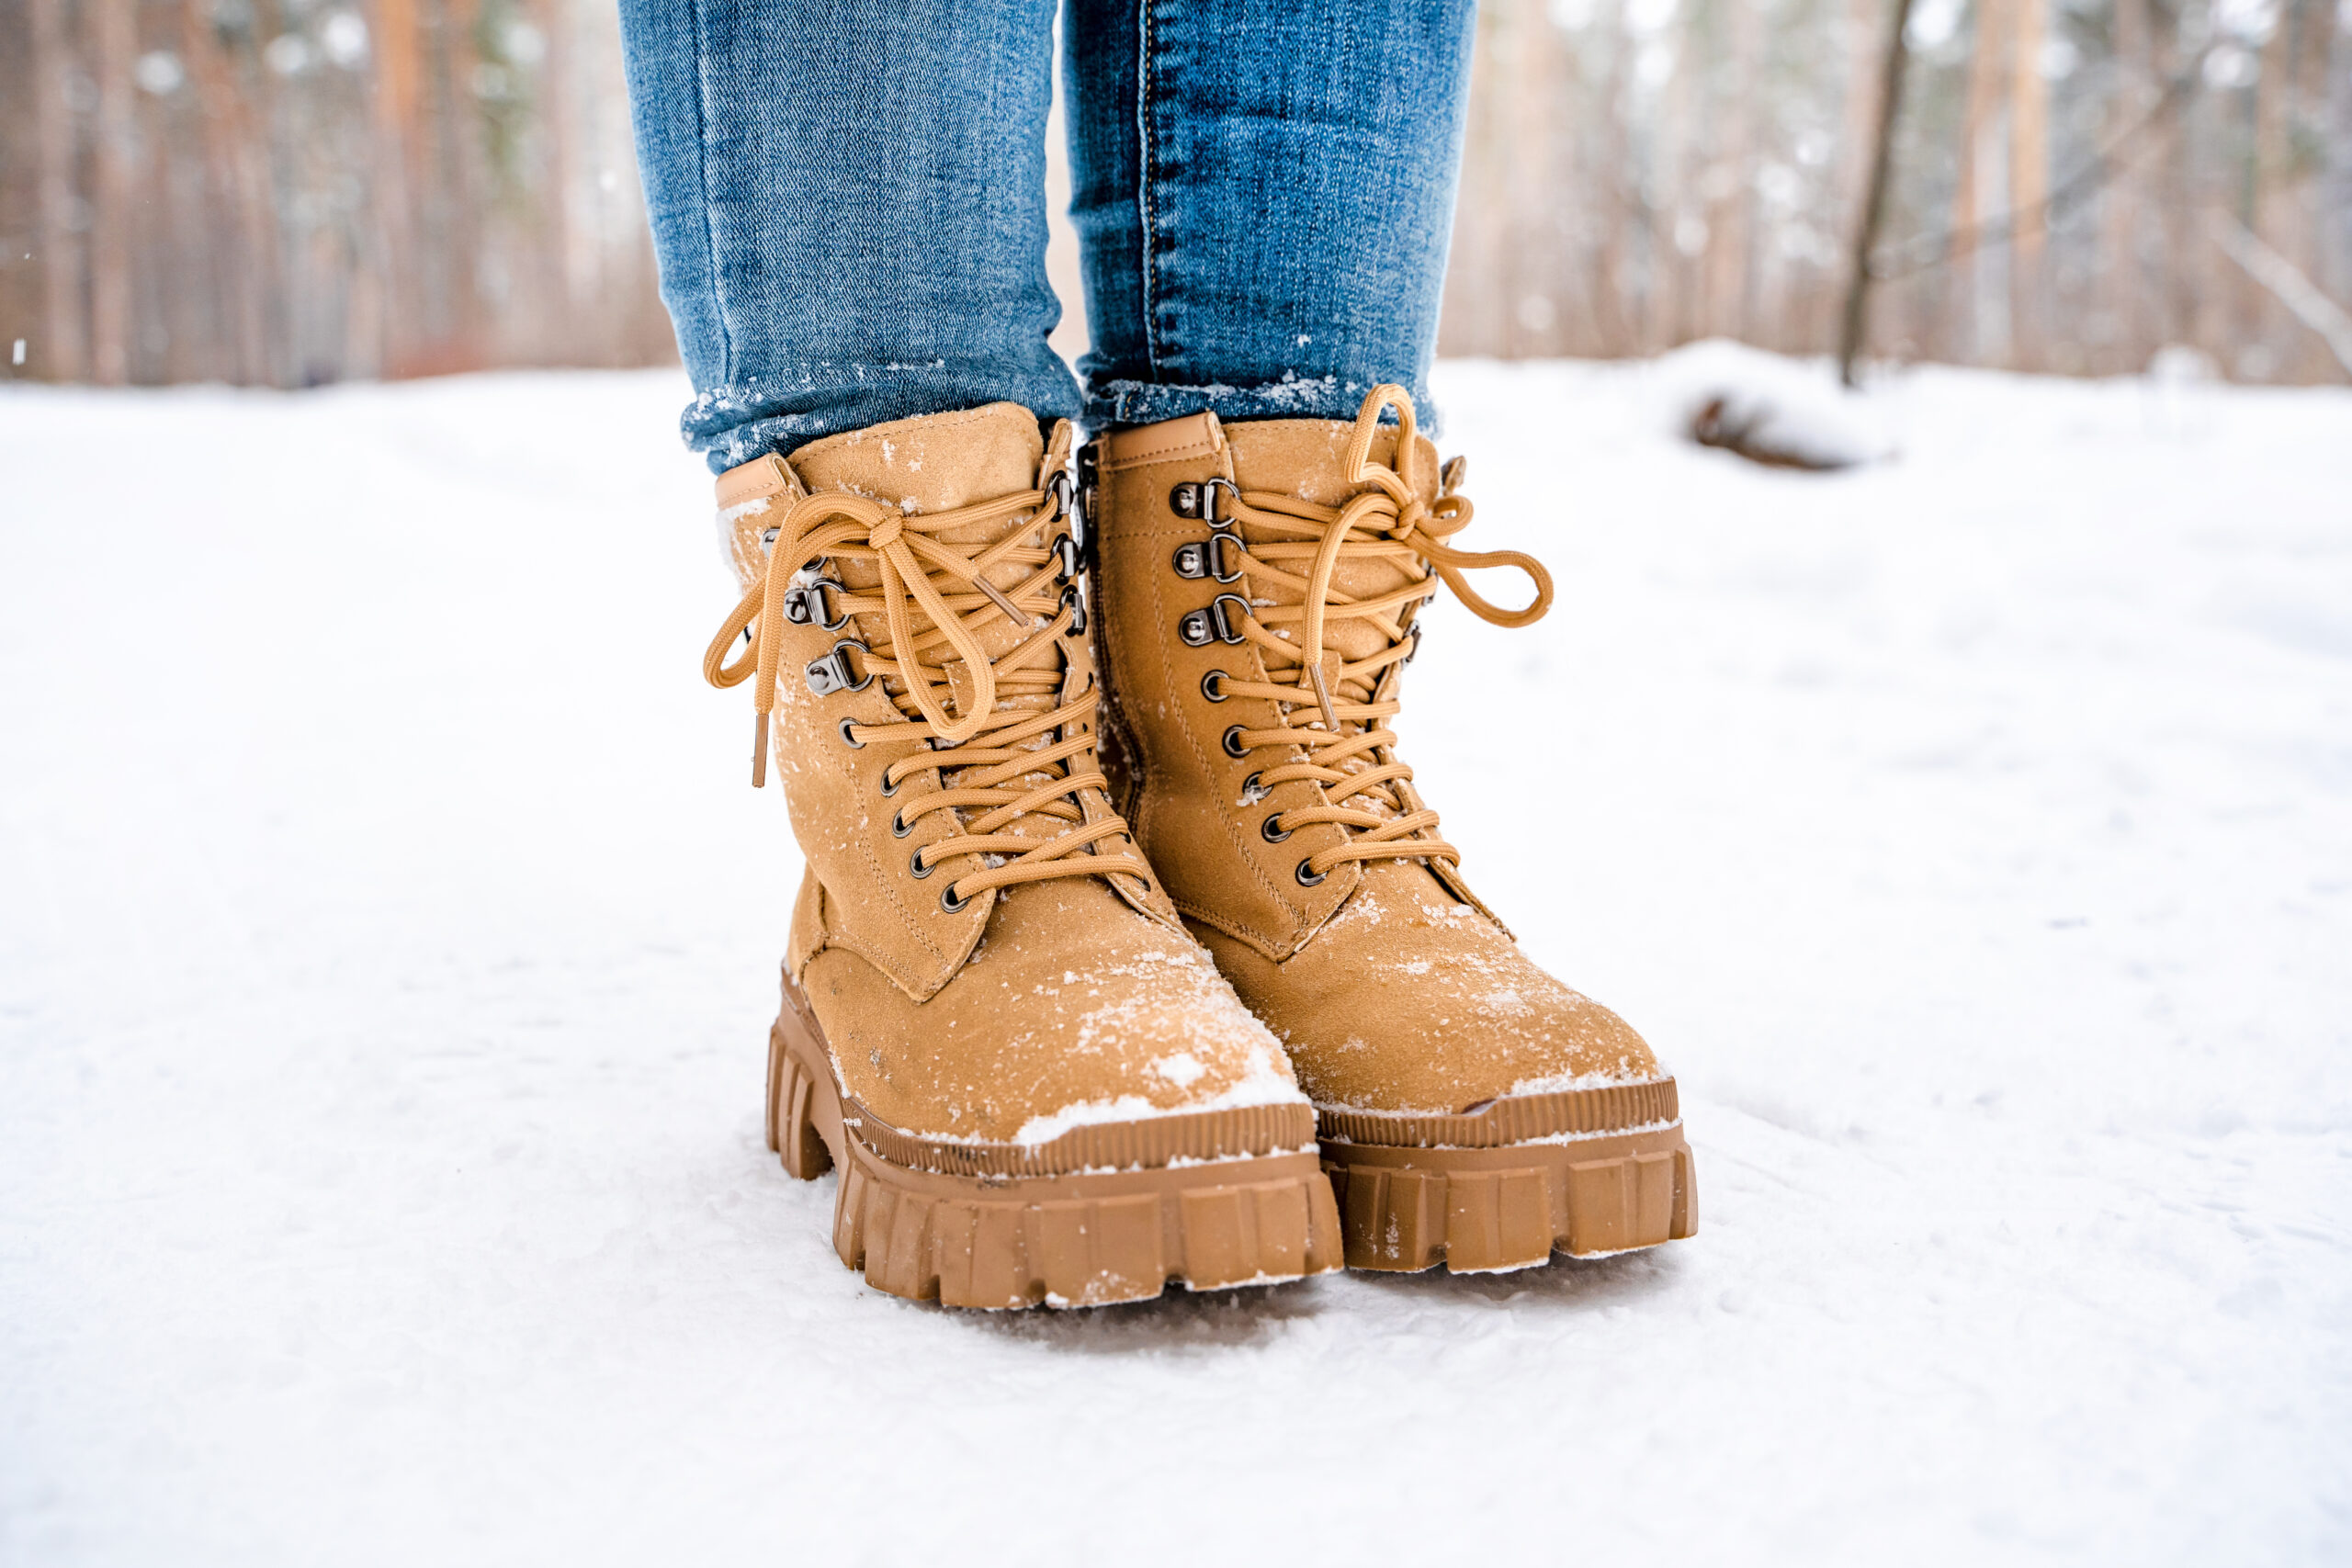 Calzado de invierno. 5 para elegir zapatos correctos al frío